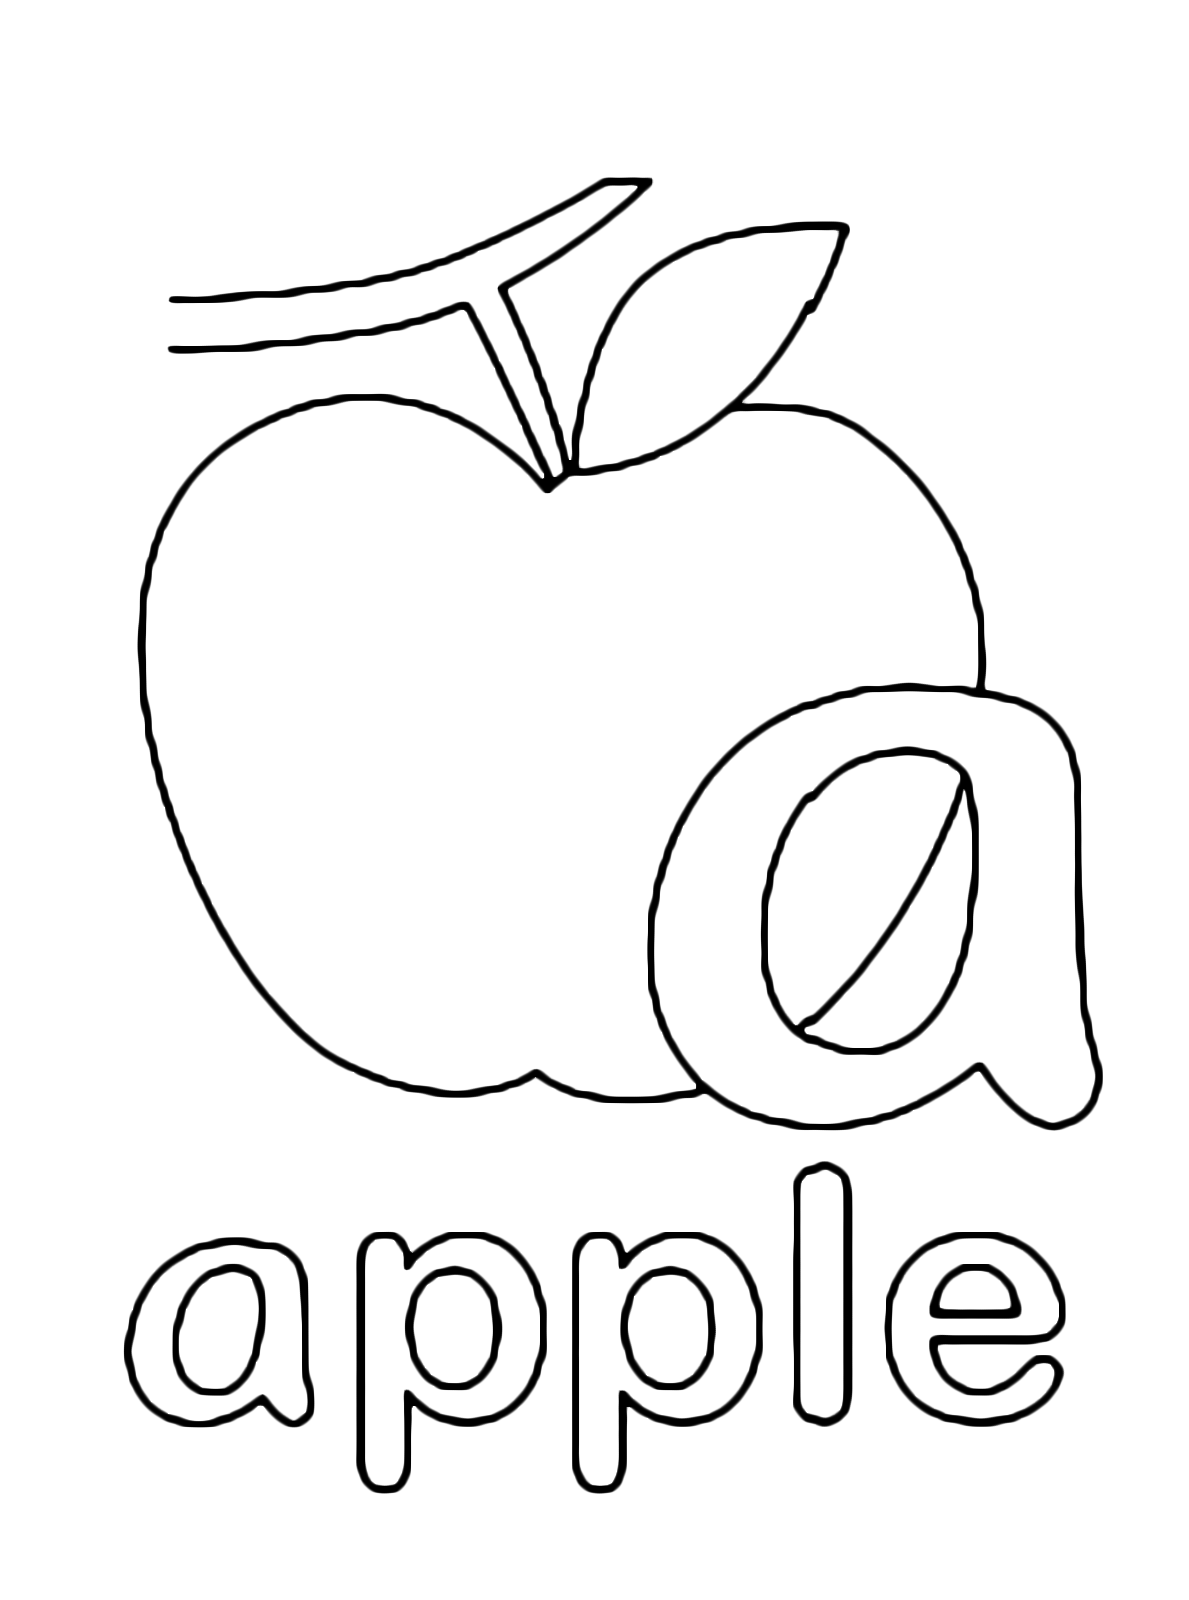 Lettere e numeri - Lettera a in stampato minuscolo di apple (mela) in Inglese